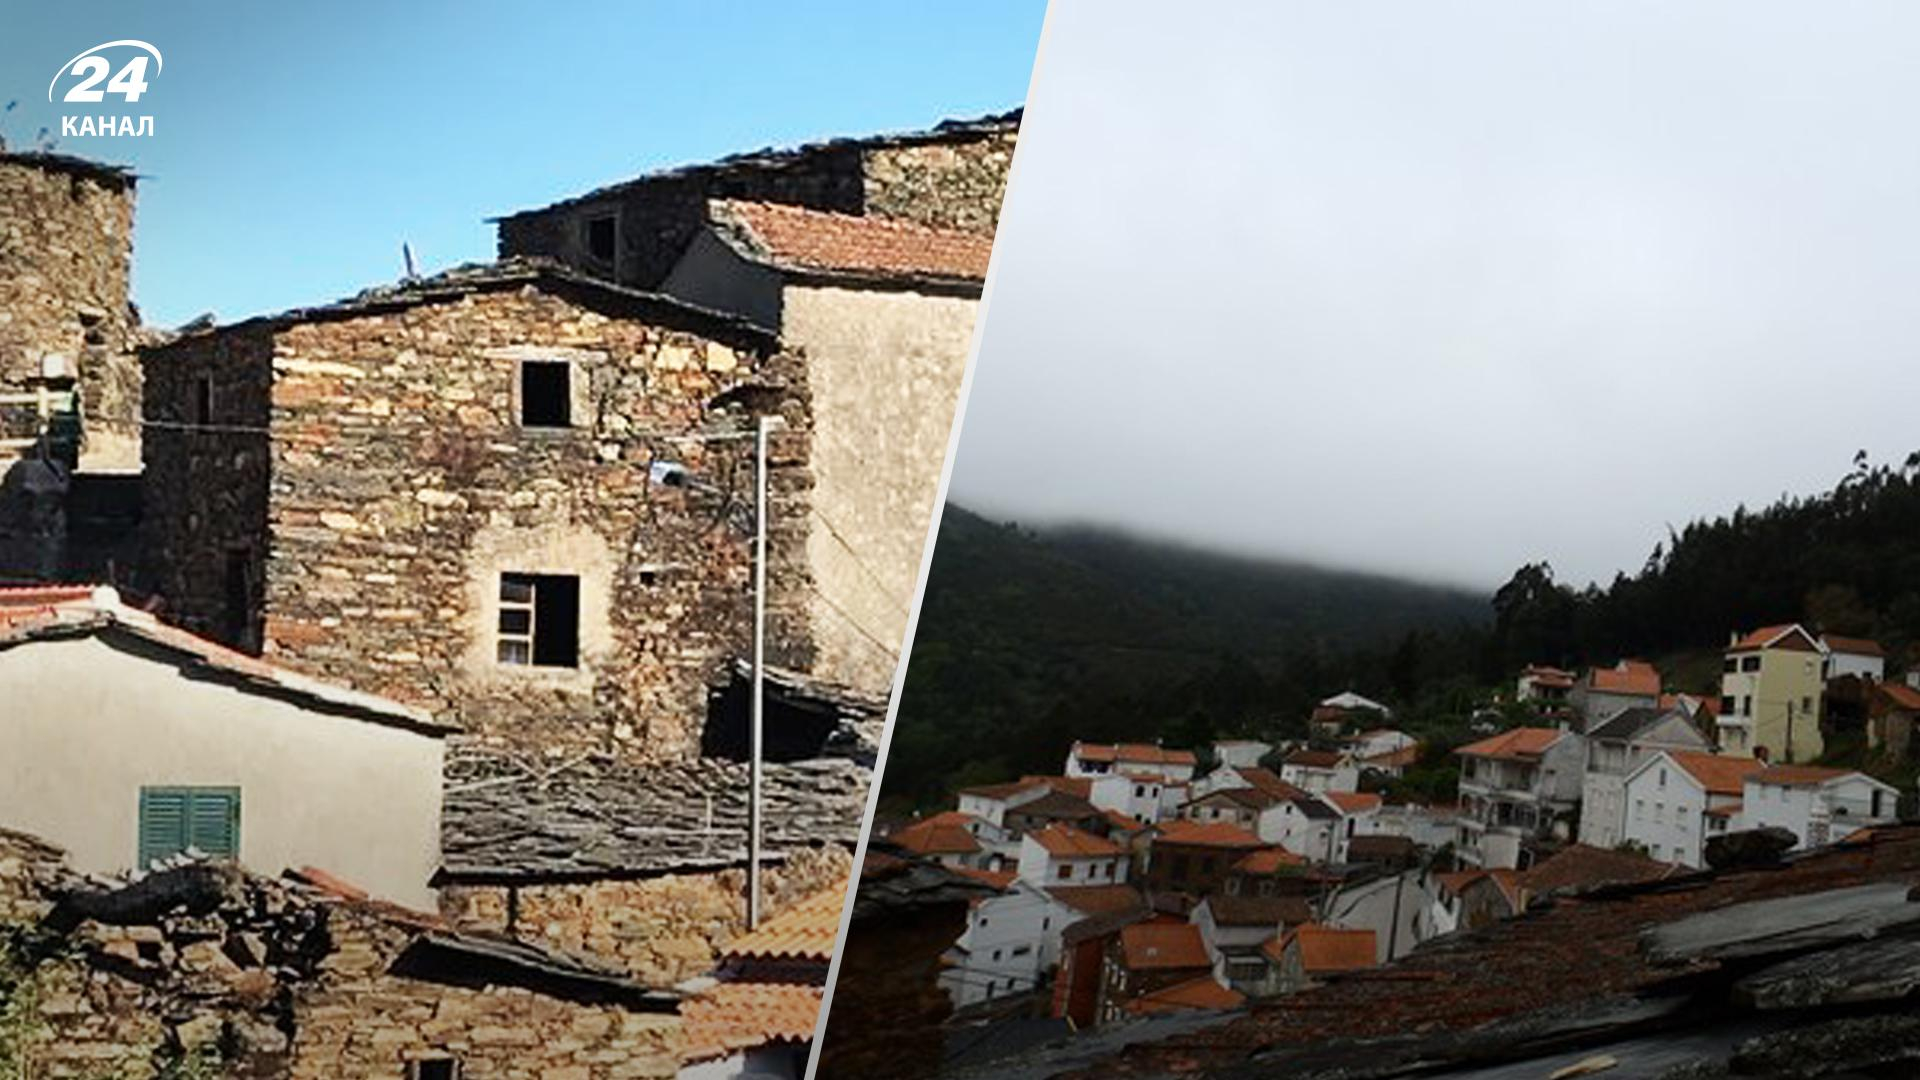 Распродажа недвижимости в Португалии  3 предложения до 10 тысяч евро - Недвижимость